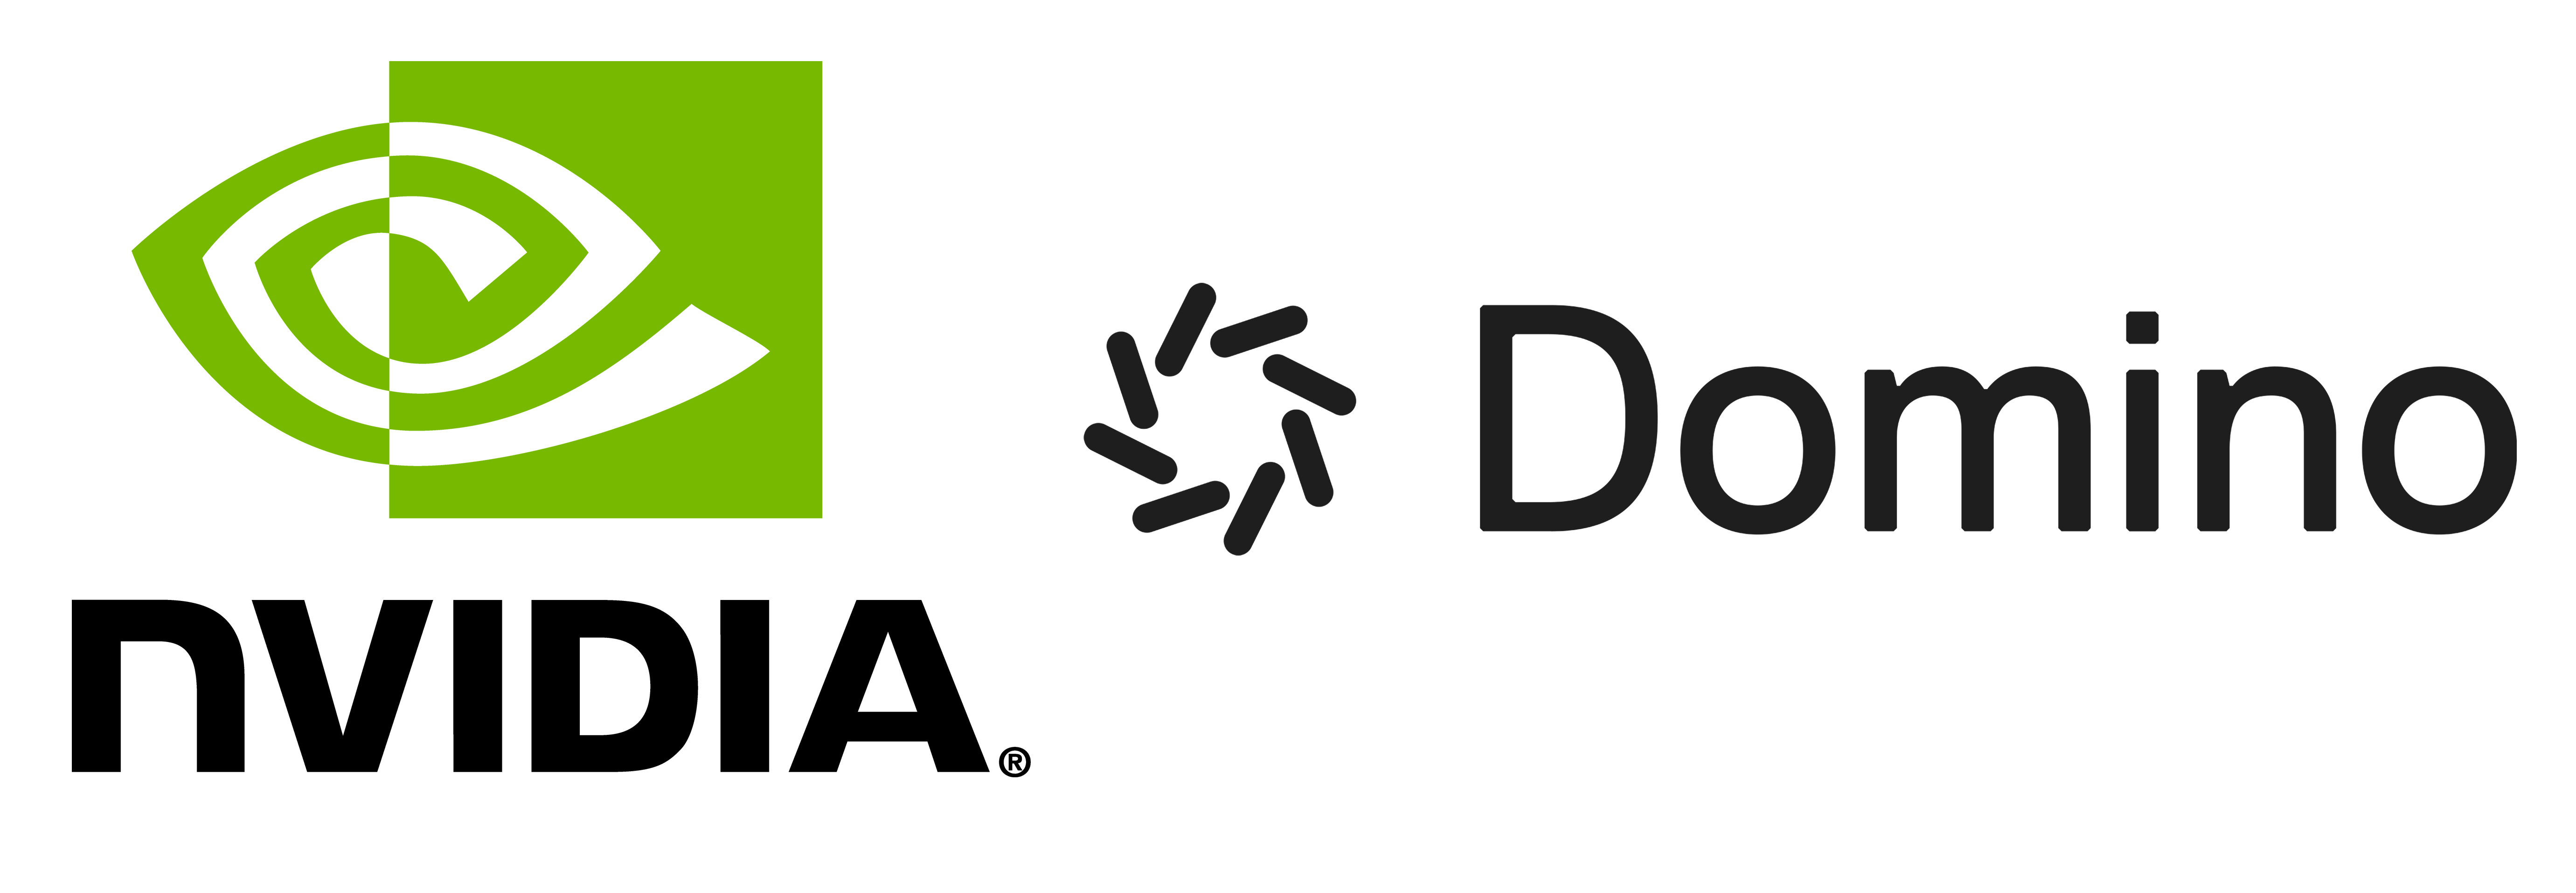 nvidia_domino_joint_logo